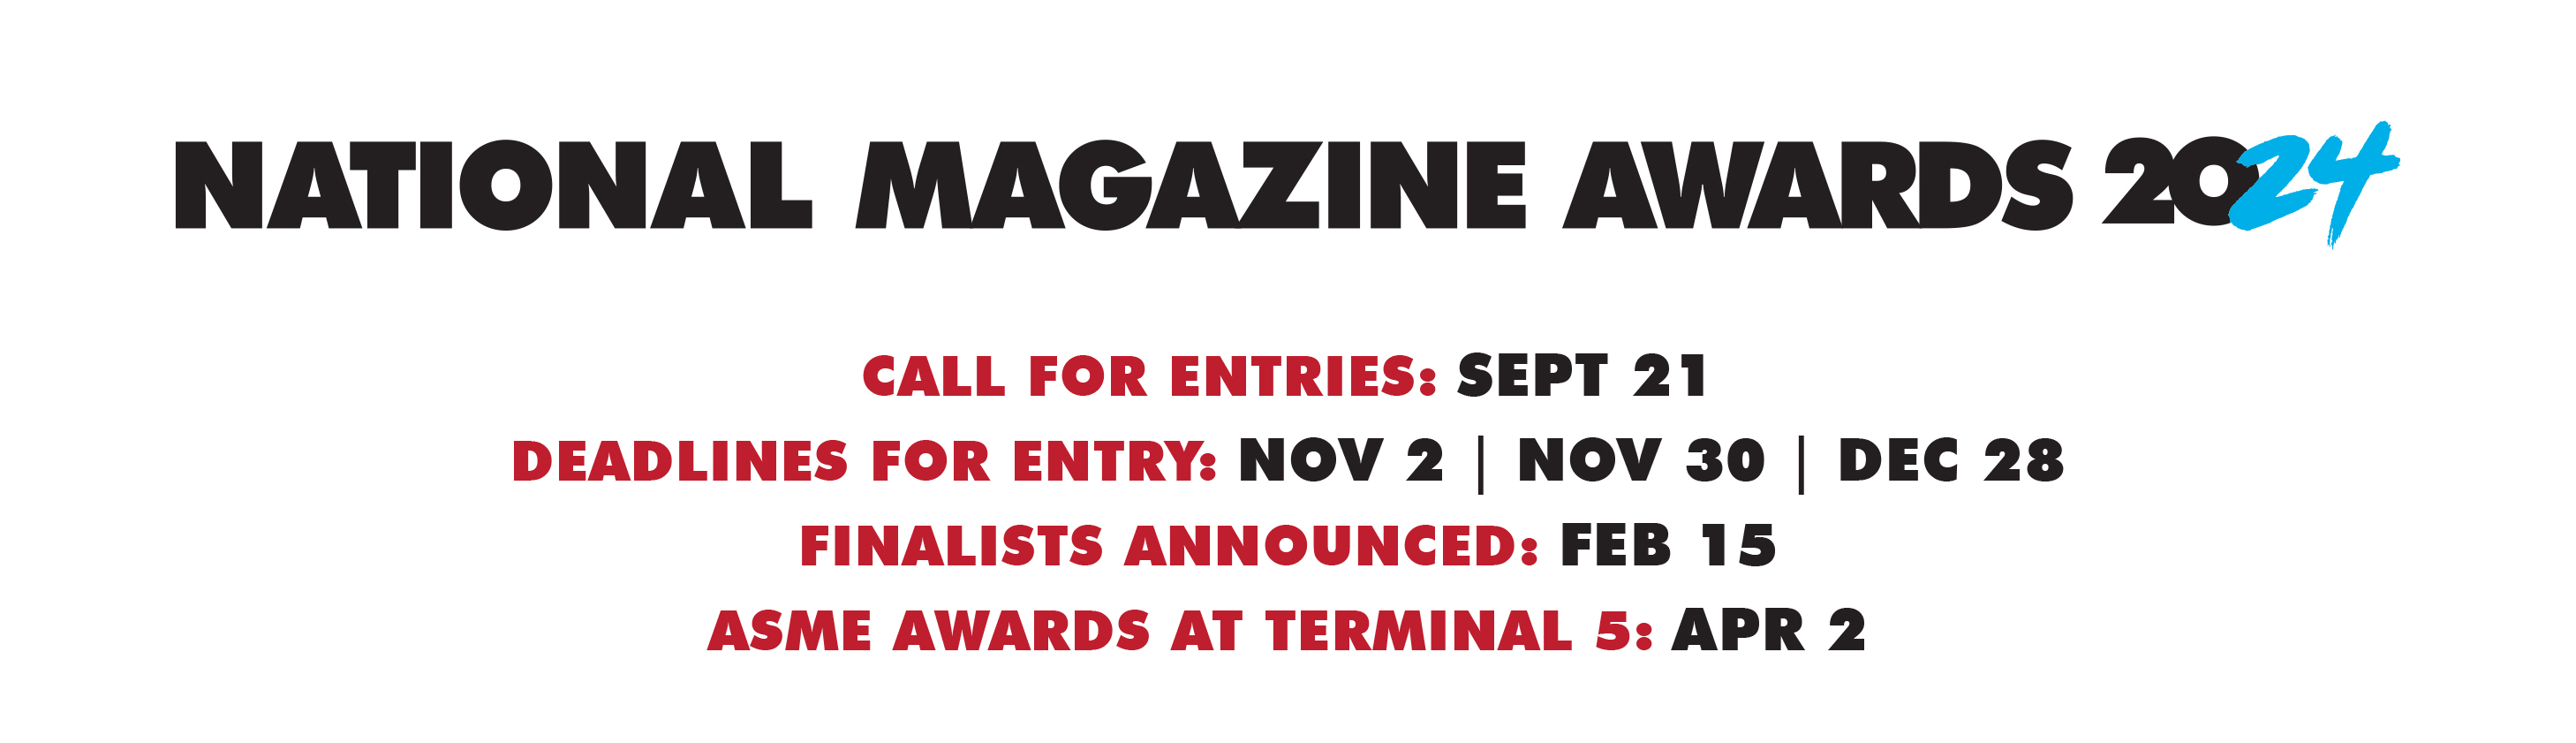 National Magazine Awards 2024 Timeline